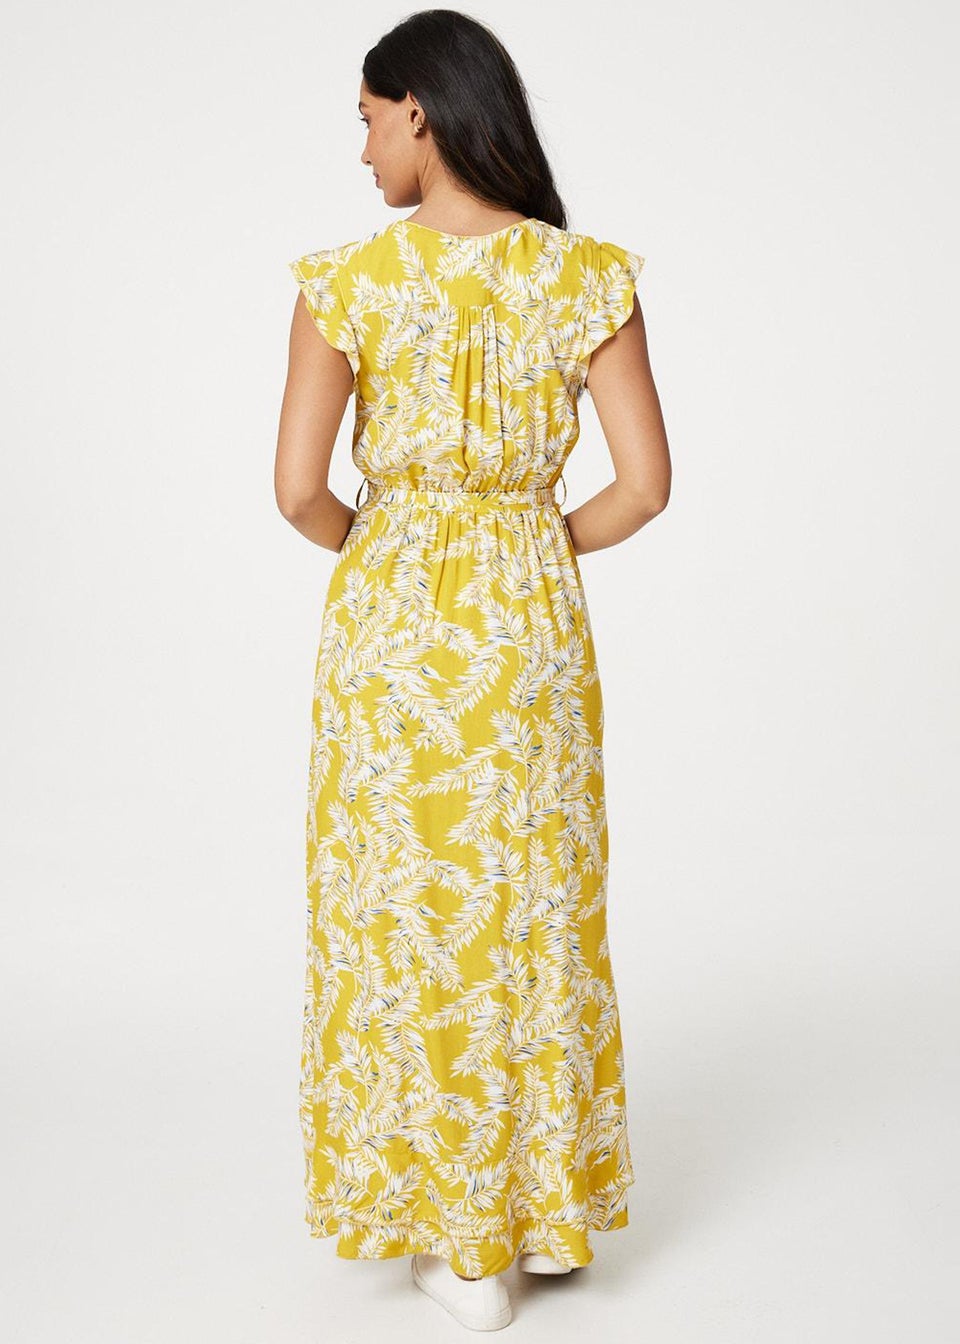 Izabel London Yellow Leaf Print Tie Waist Maxi Dress